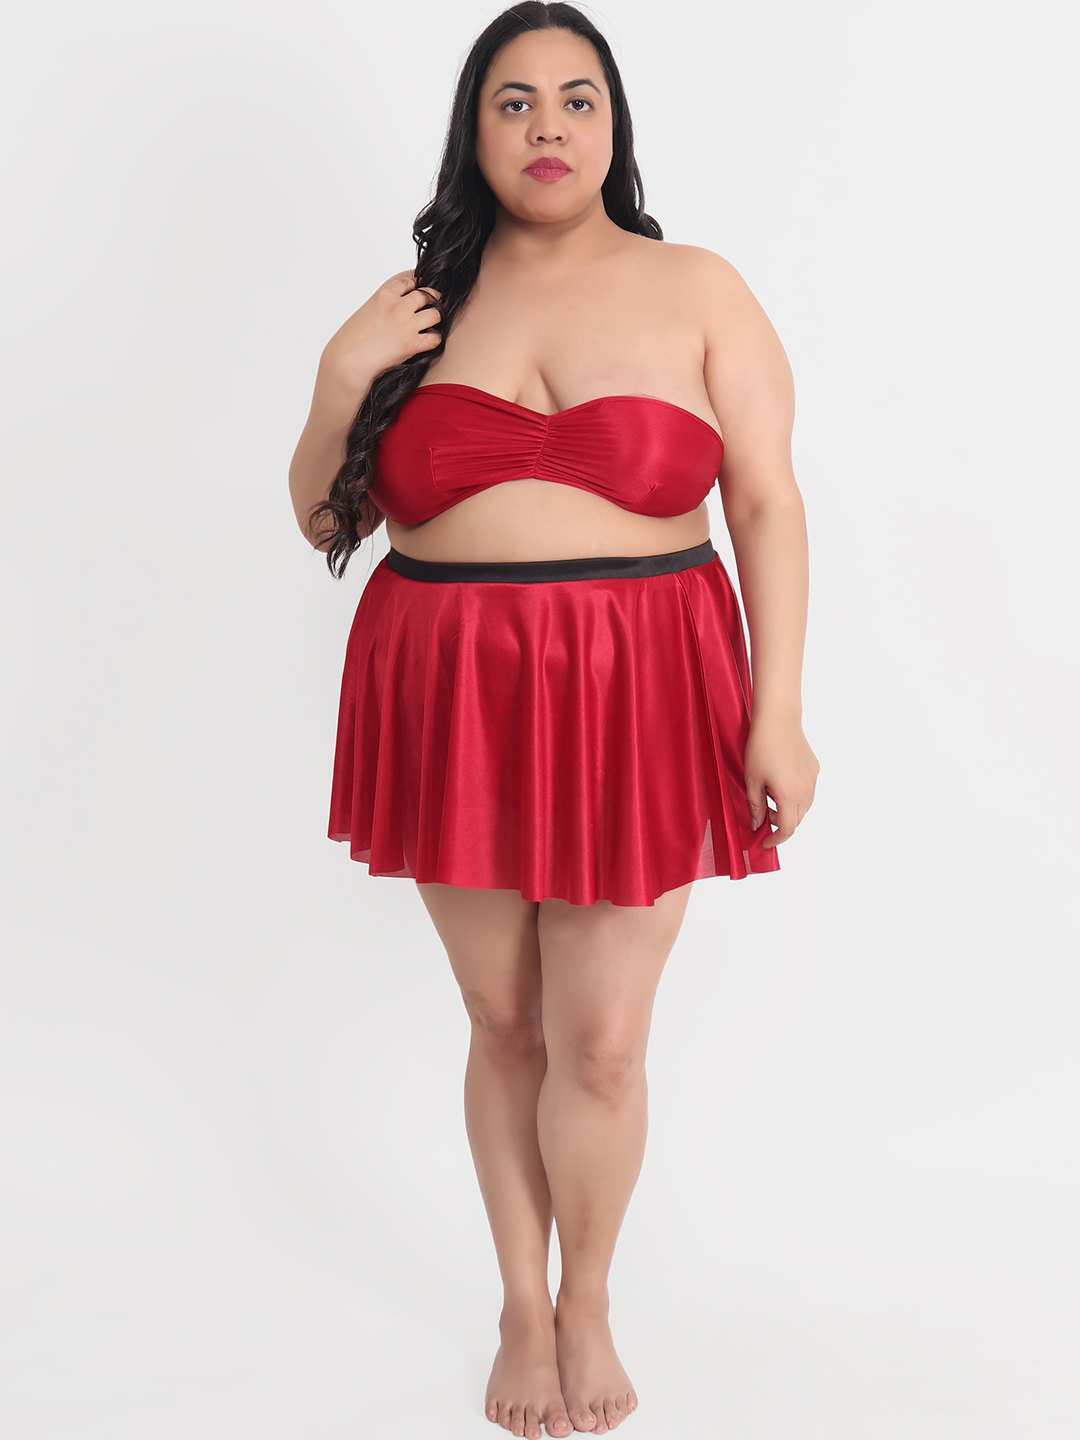 Plus Size Sexy 3 Piece Babydoll Bikini Dress for Honeymoon 201M